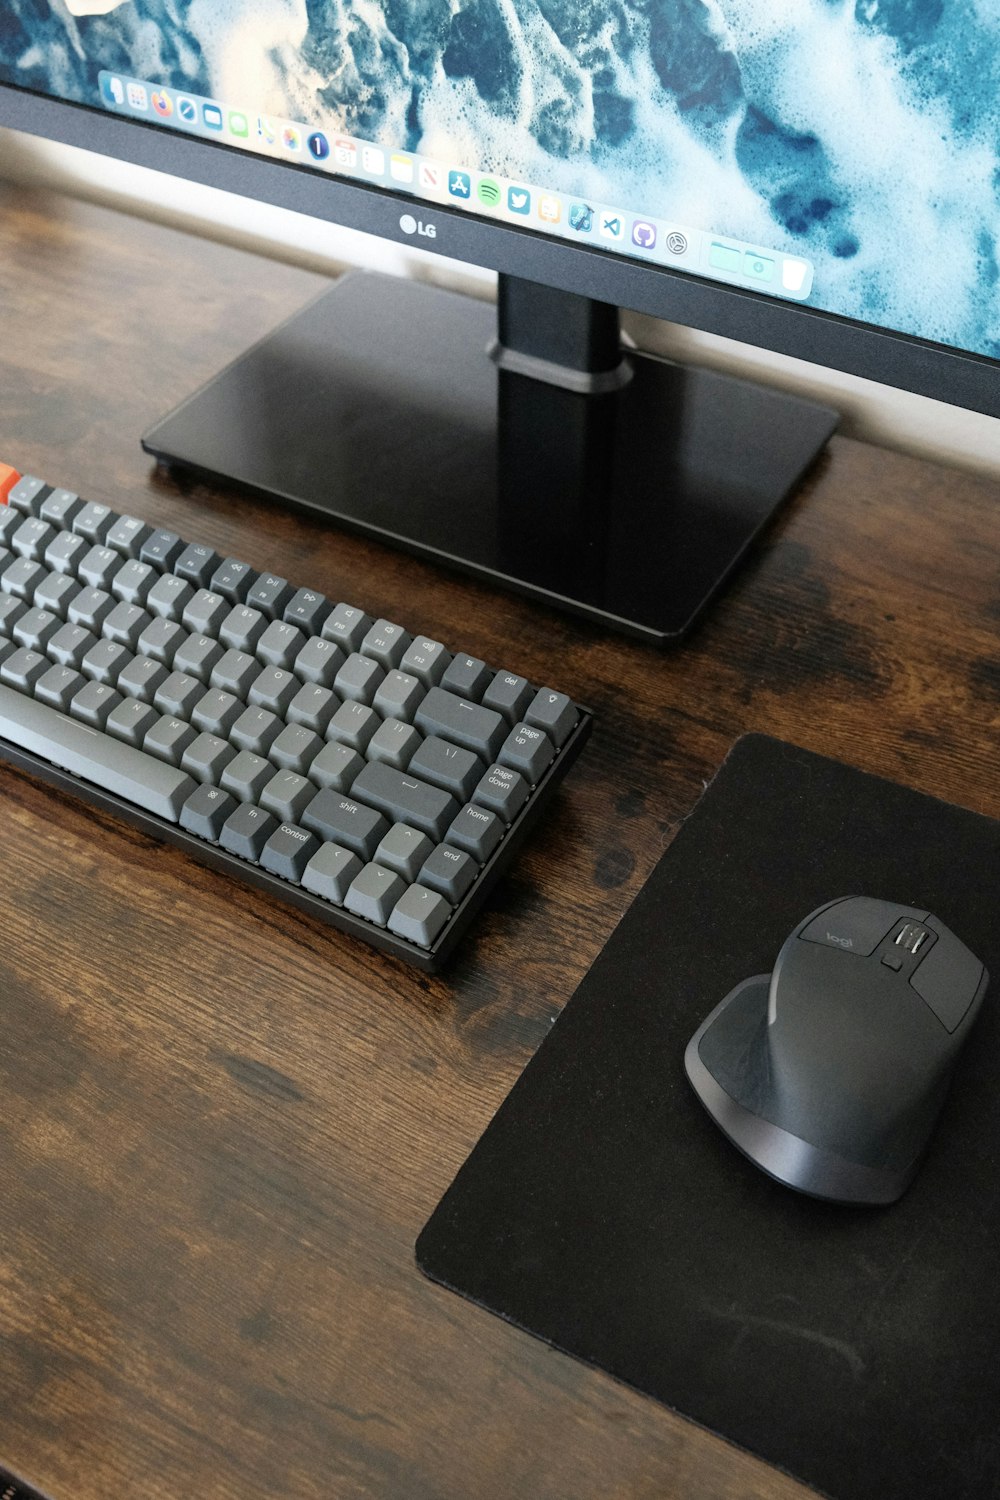 teclado negro de la computadora al lado del monitor de la computadora negro